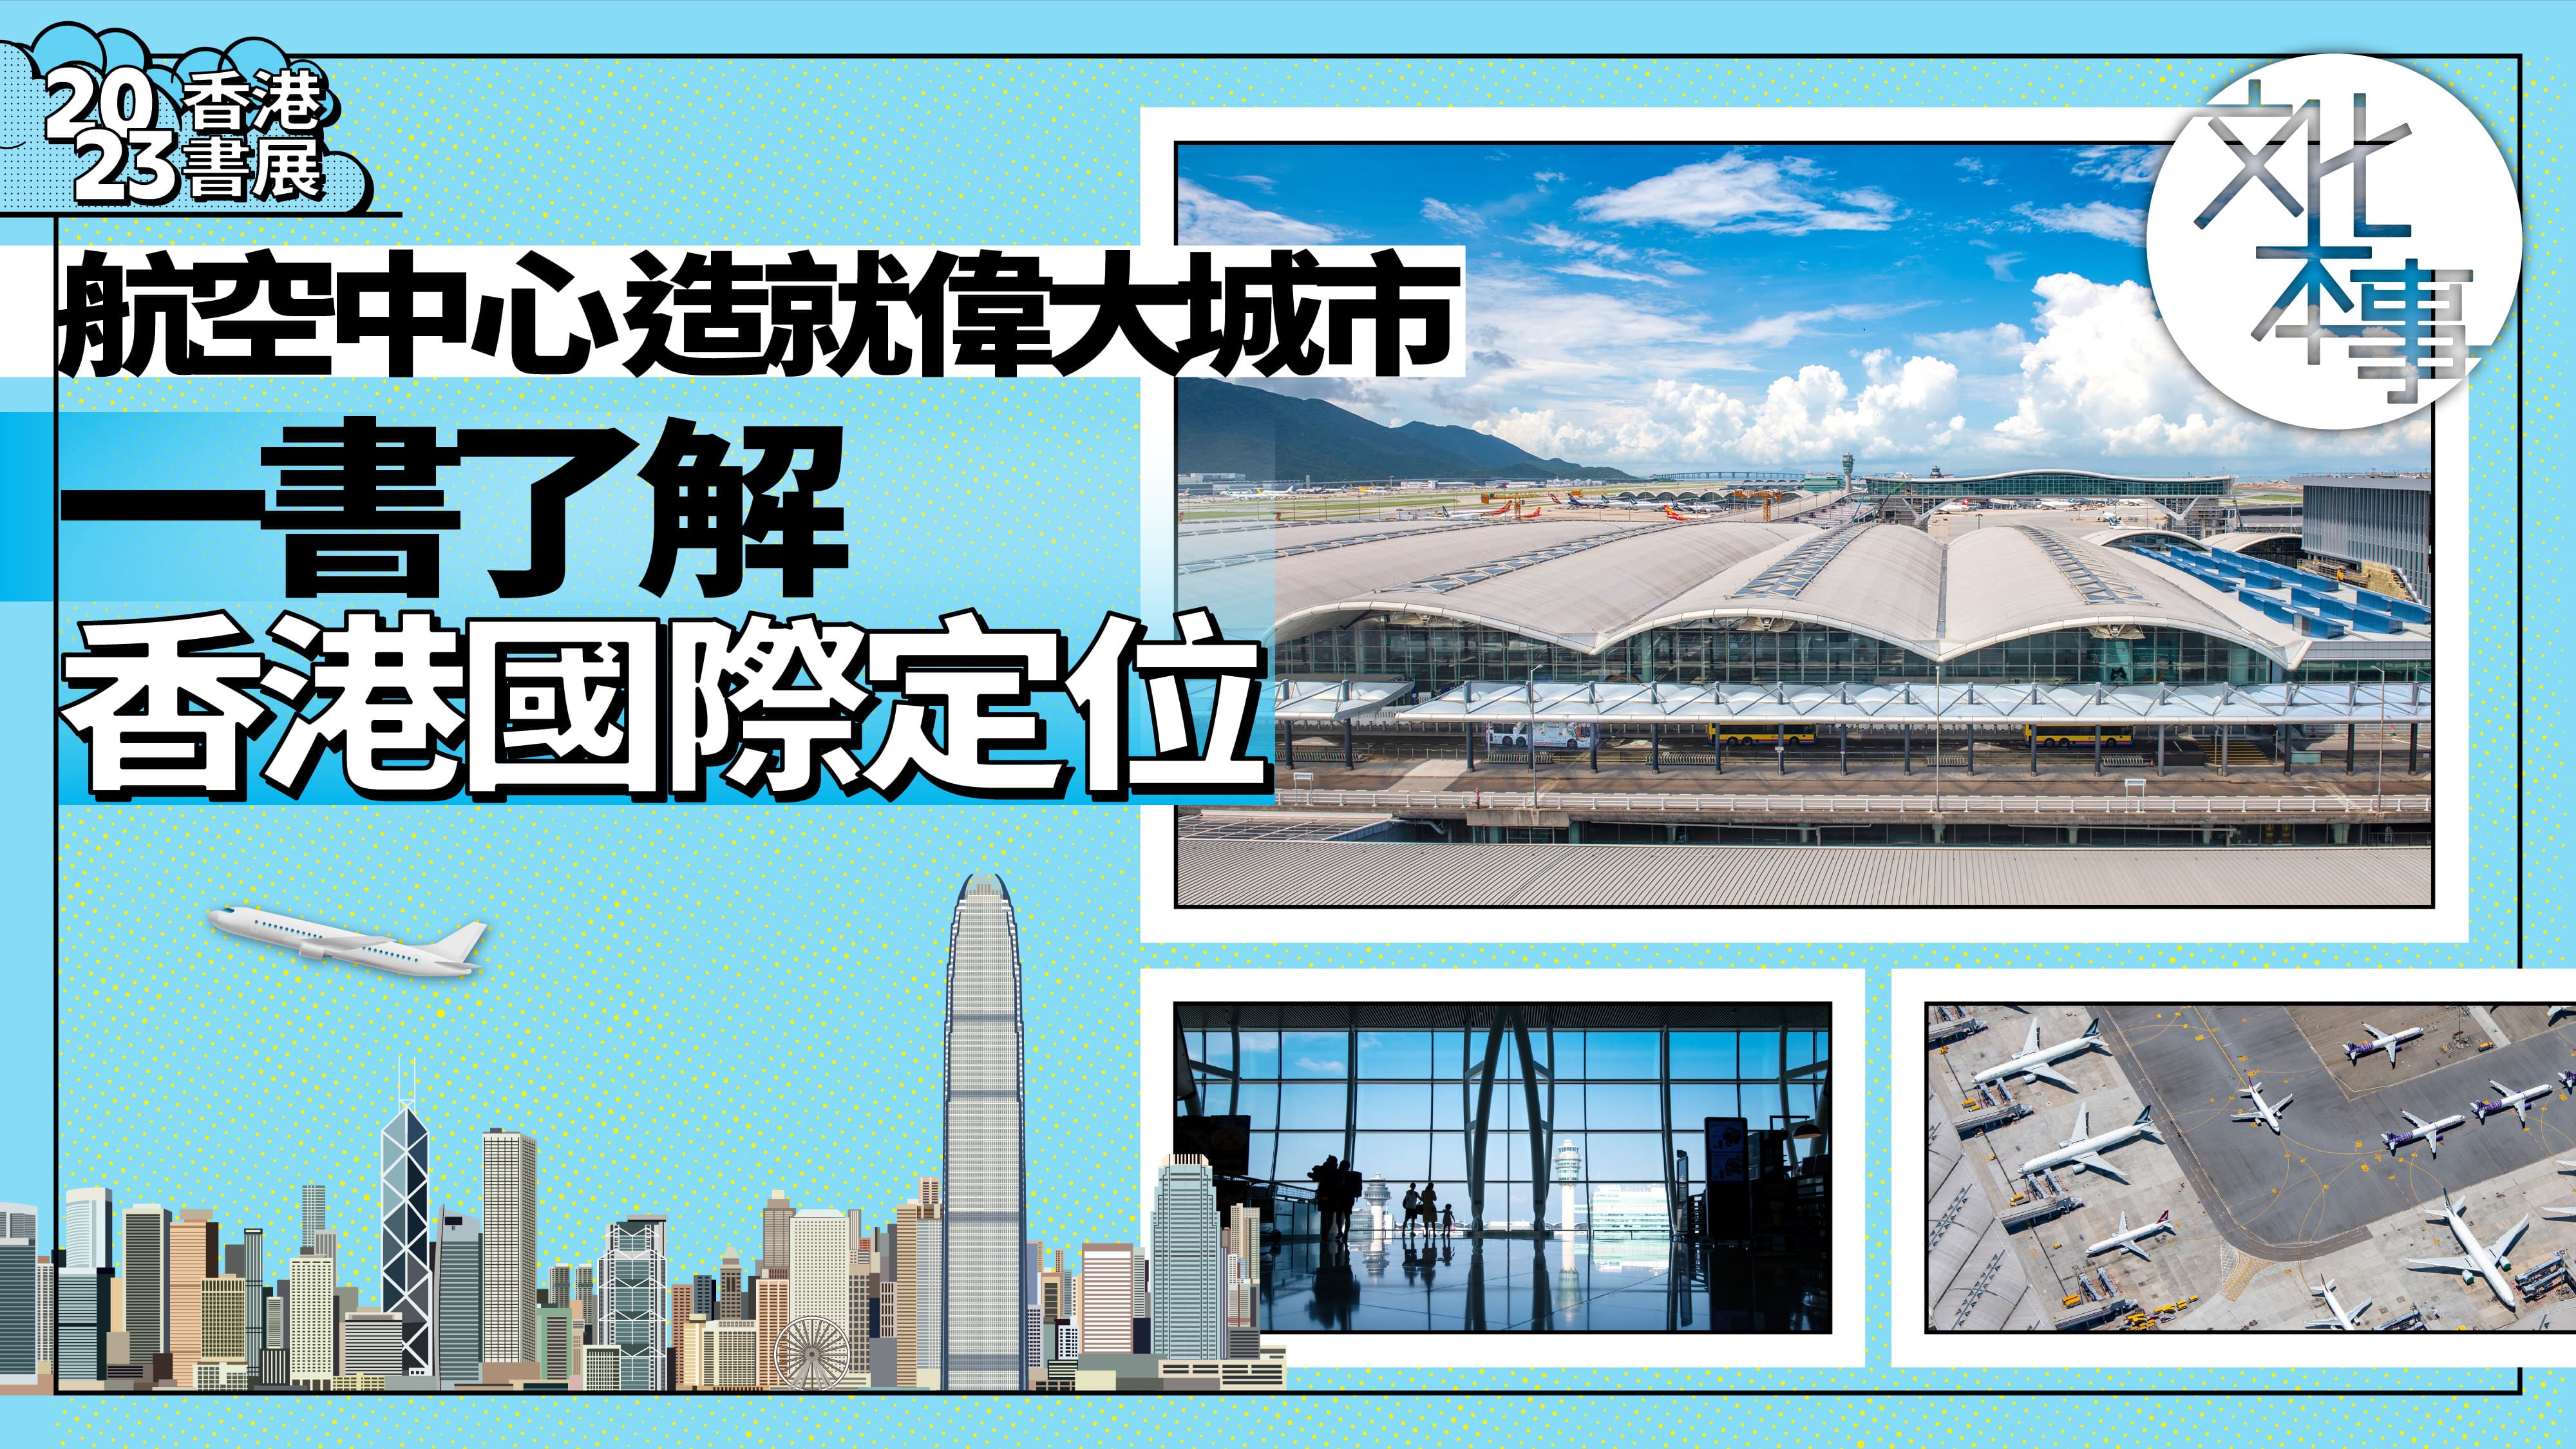 有片-香港書展-航空中心造就偉大城市-一書了解香港國際定位